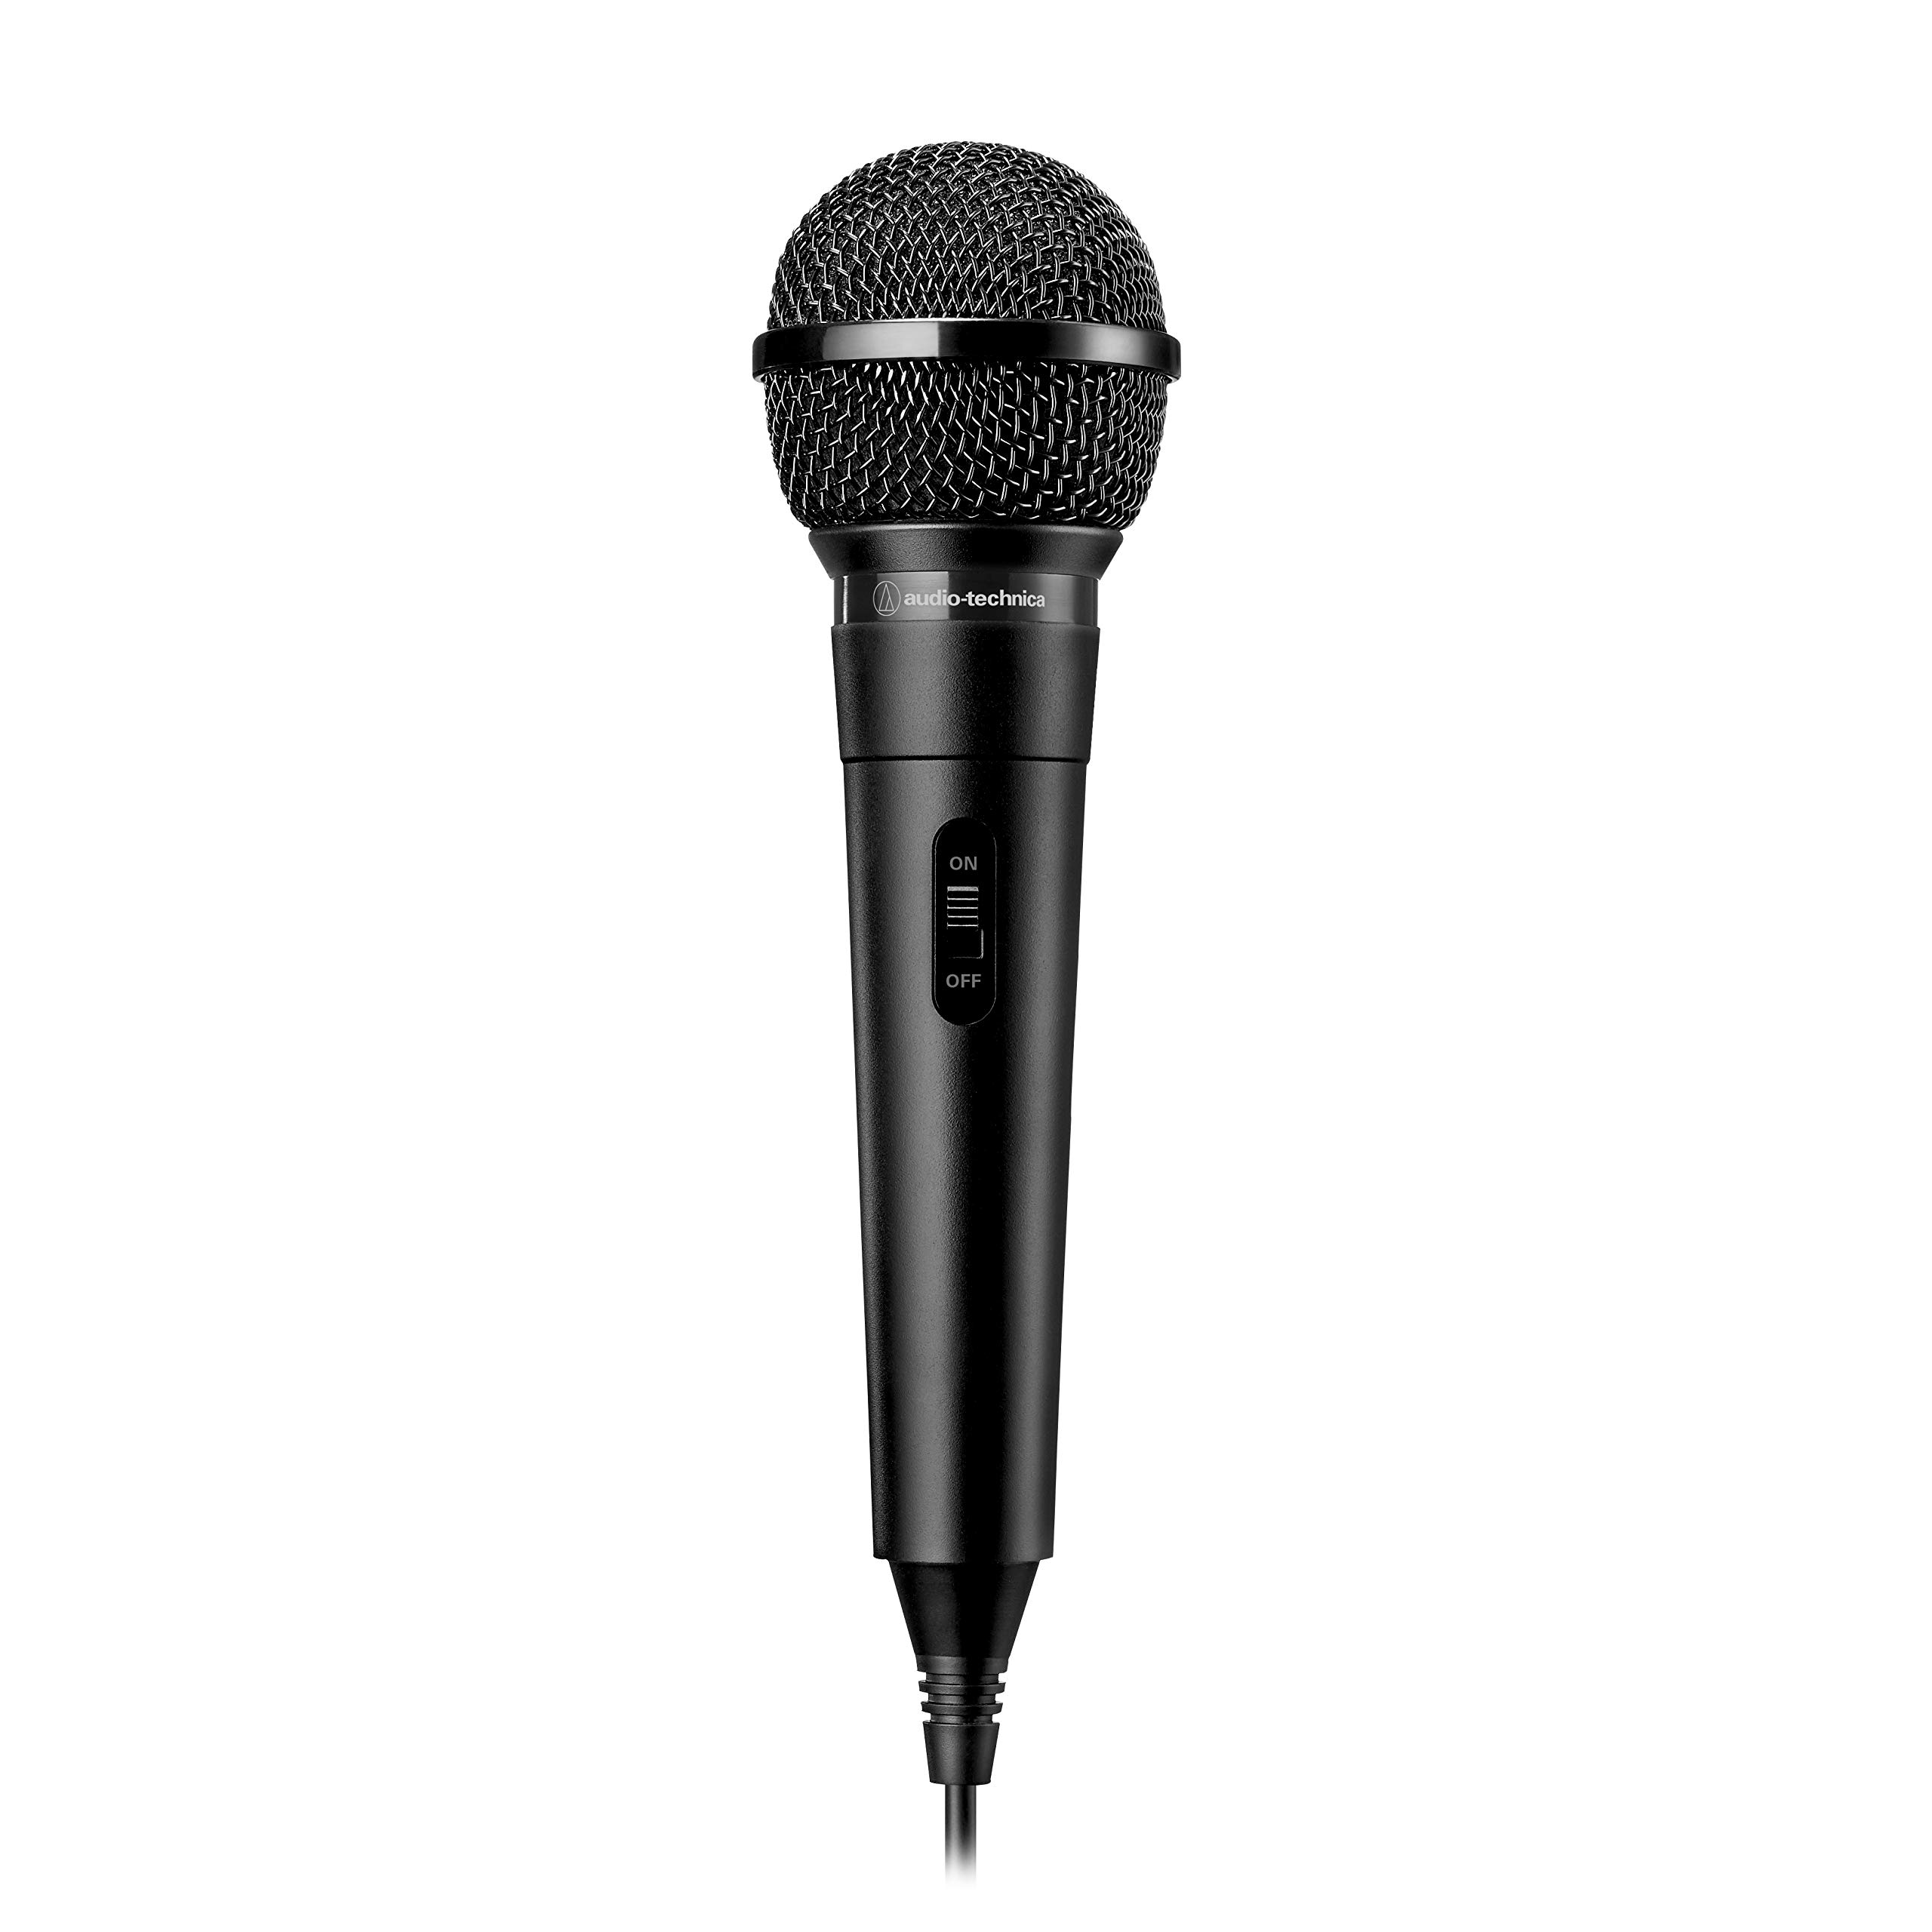 Magnifique Audio-Technica ATR1100x Microphone Dynamique Unidirectionnel pour Instrument/Voix Noir 8Pu9ZQmL7 Boutique